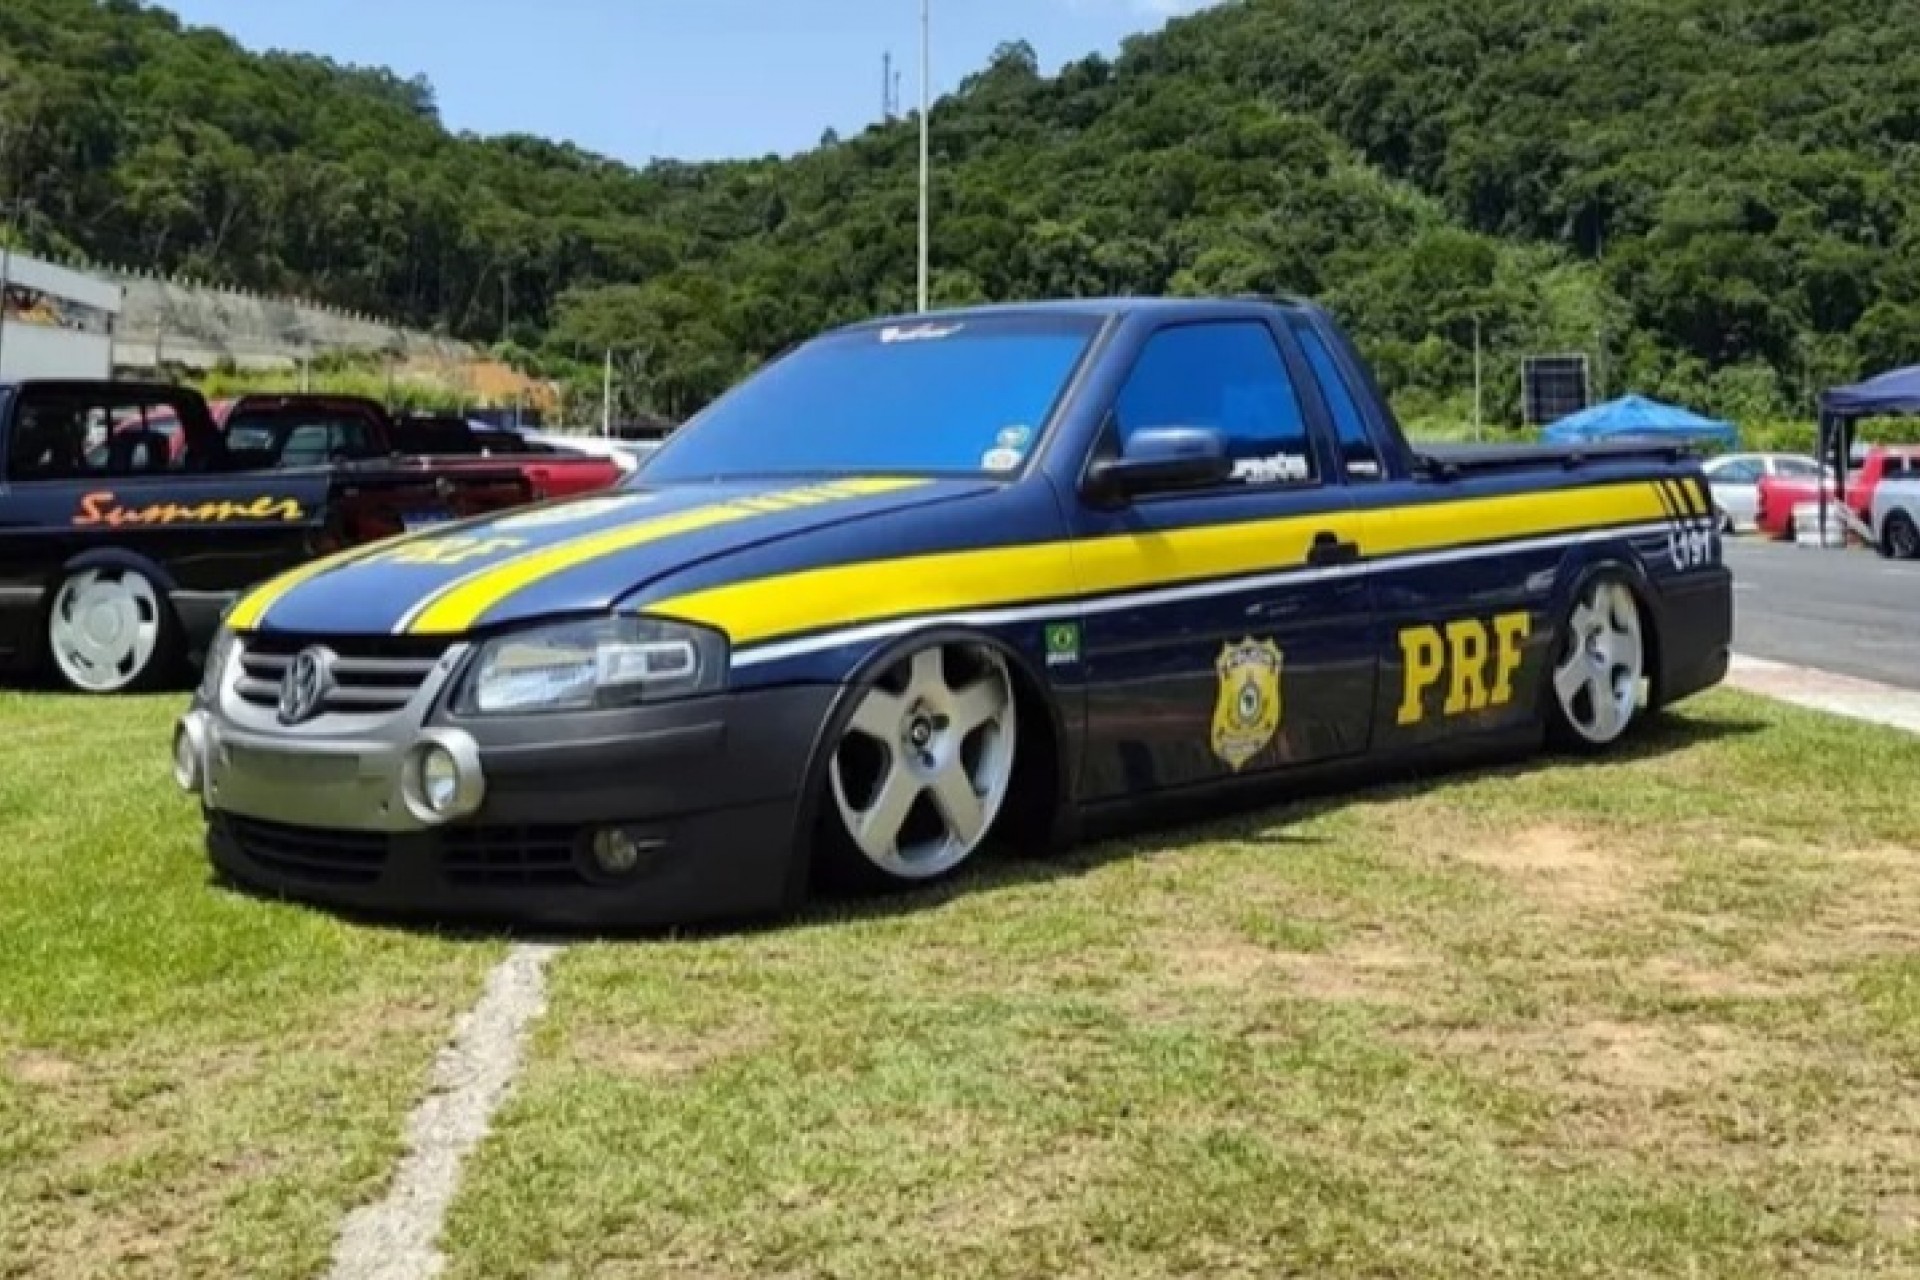 Picape caracterizada como viatura da Polícia Rodoviária Federal é apreendida em Balneário Camboriú